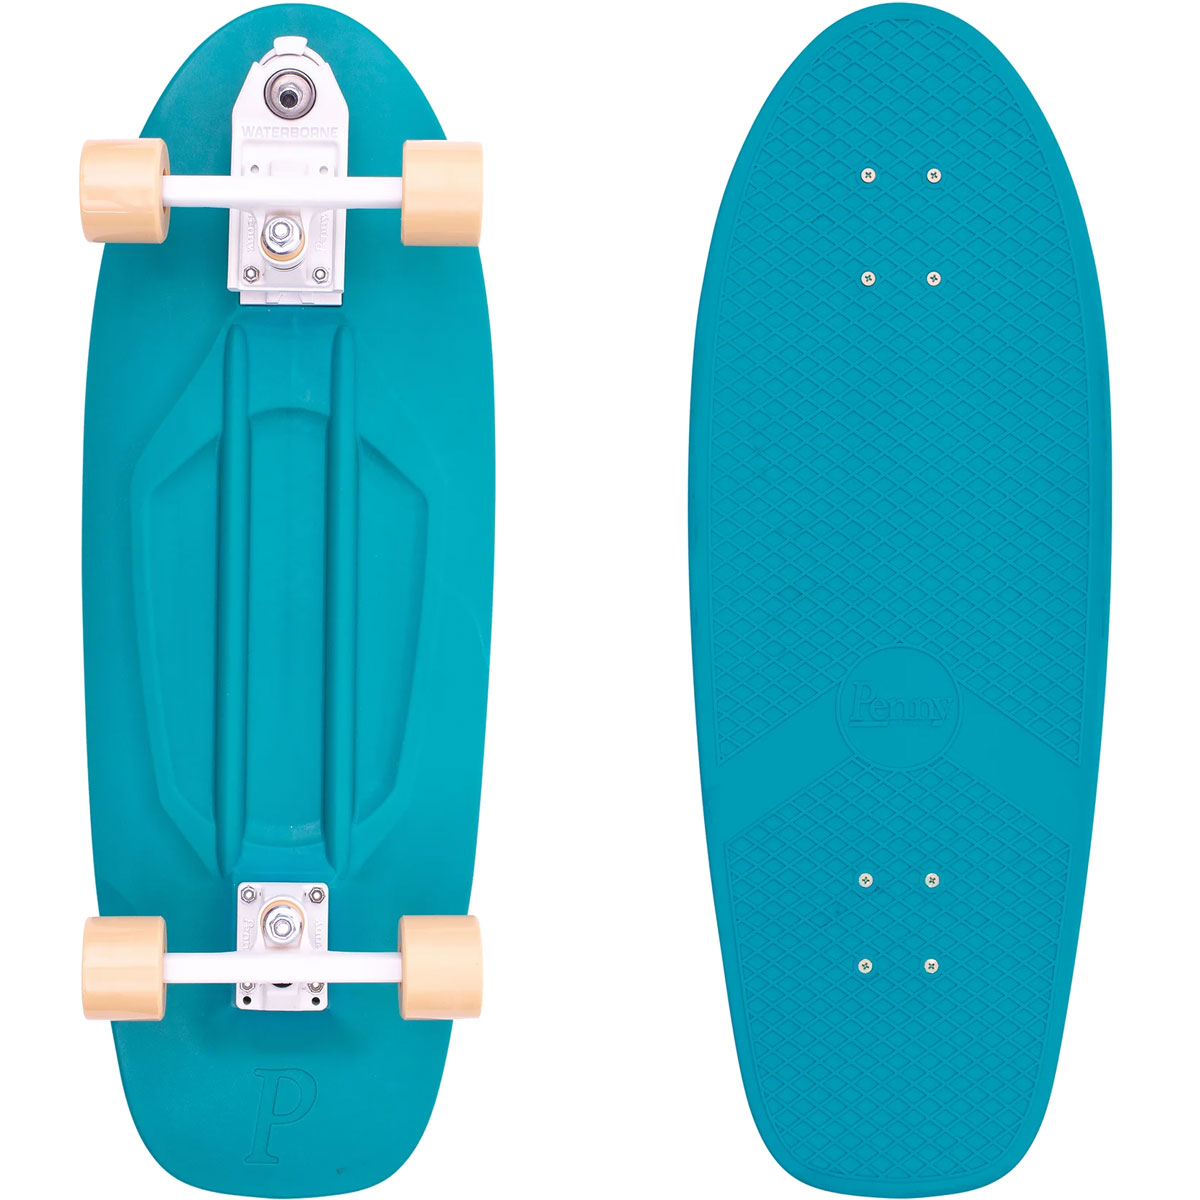 ペニー スケボー 29インチ サーフスケート Penny Skateboard High Line Surfskate Ocean Mist ブルー  ハイライン くねくね 人気 ブランド